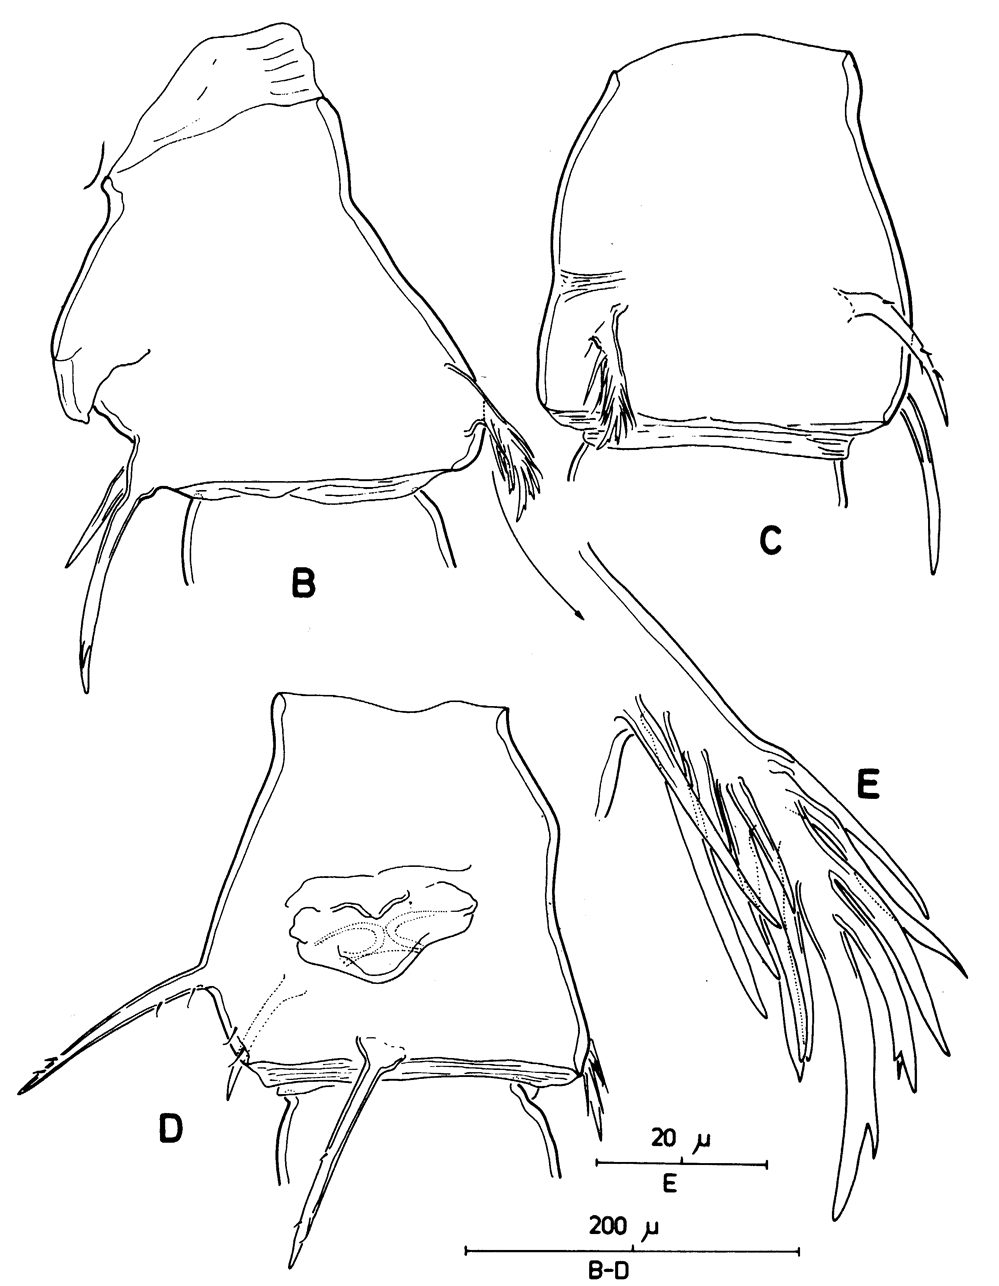 Espèce Centropages typicus - Planche 6 de figures morphologiques